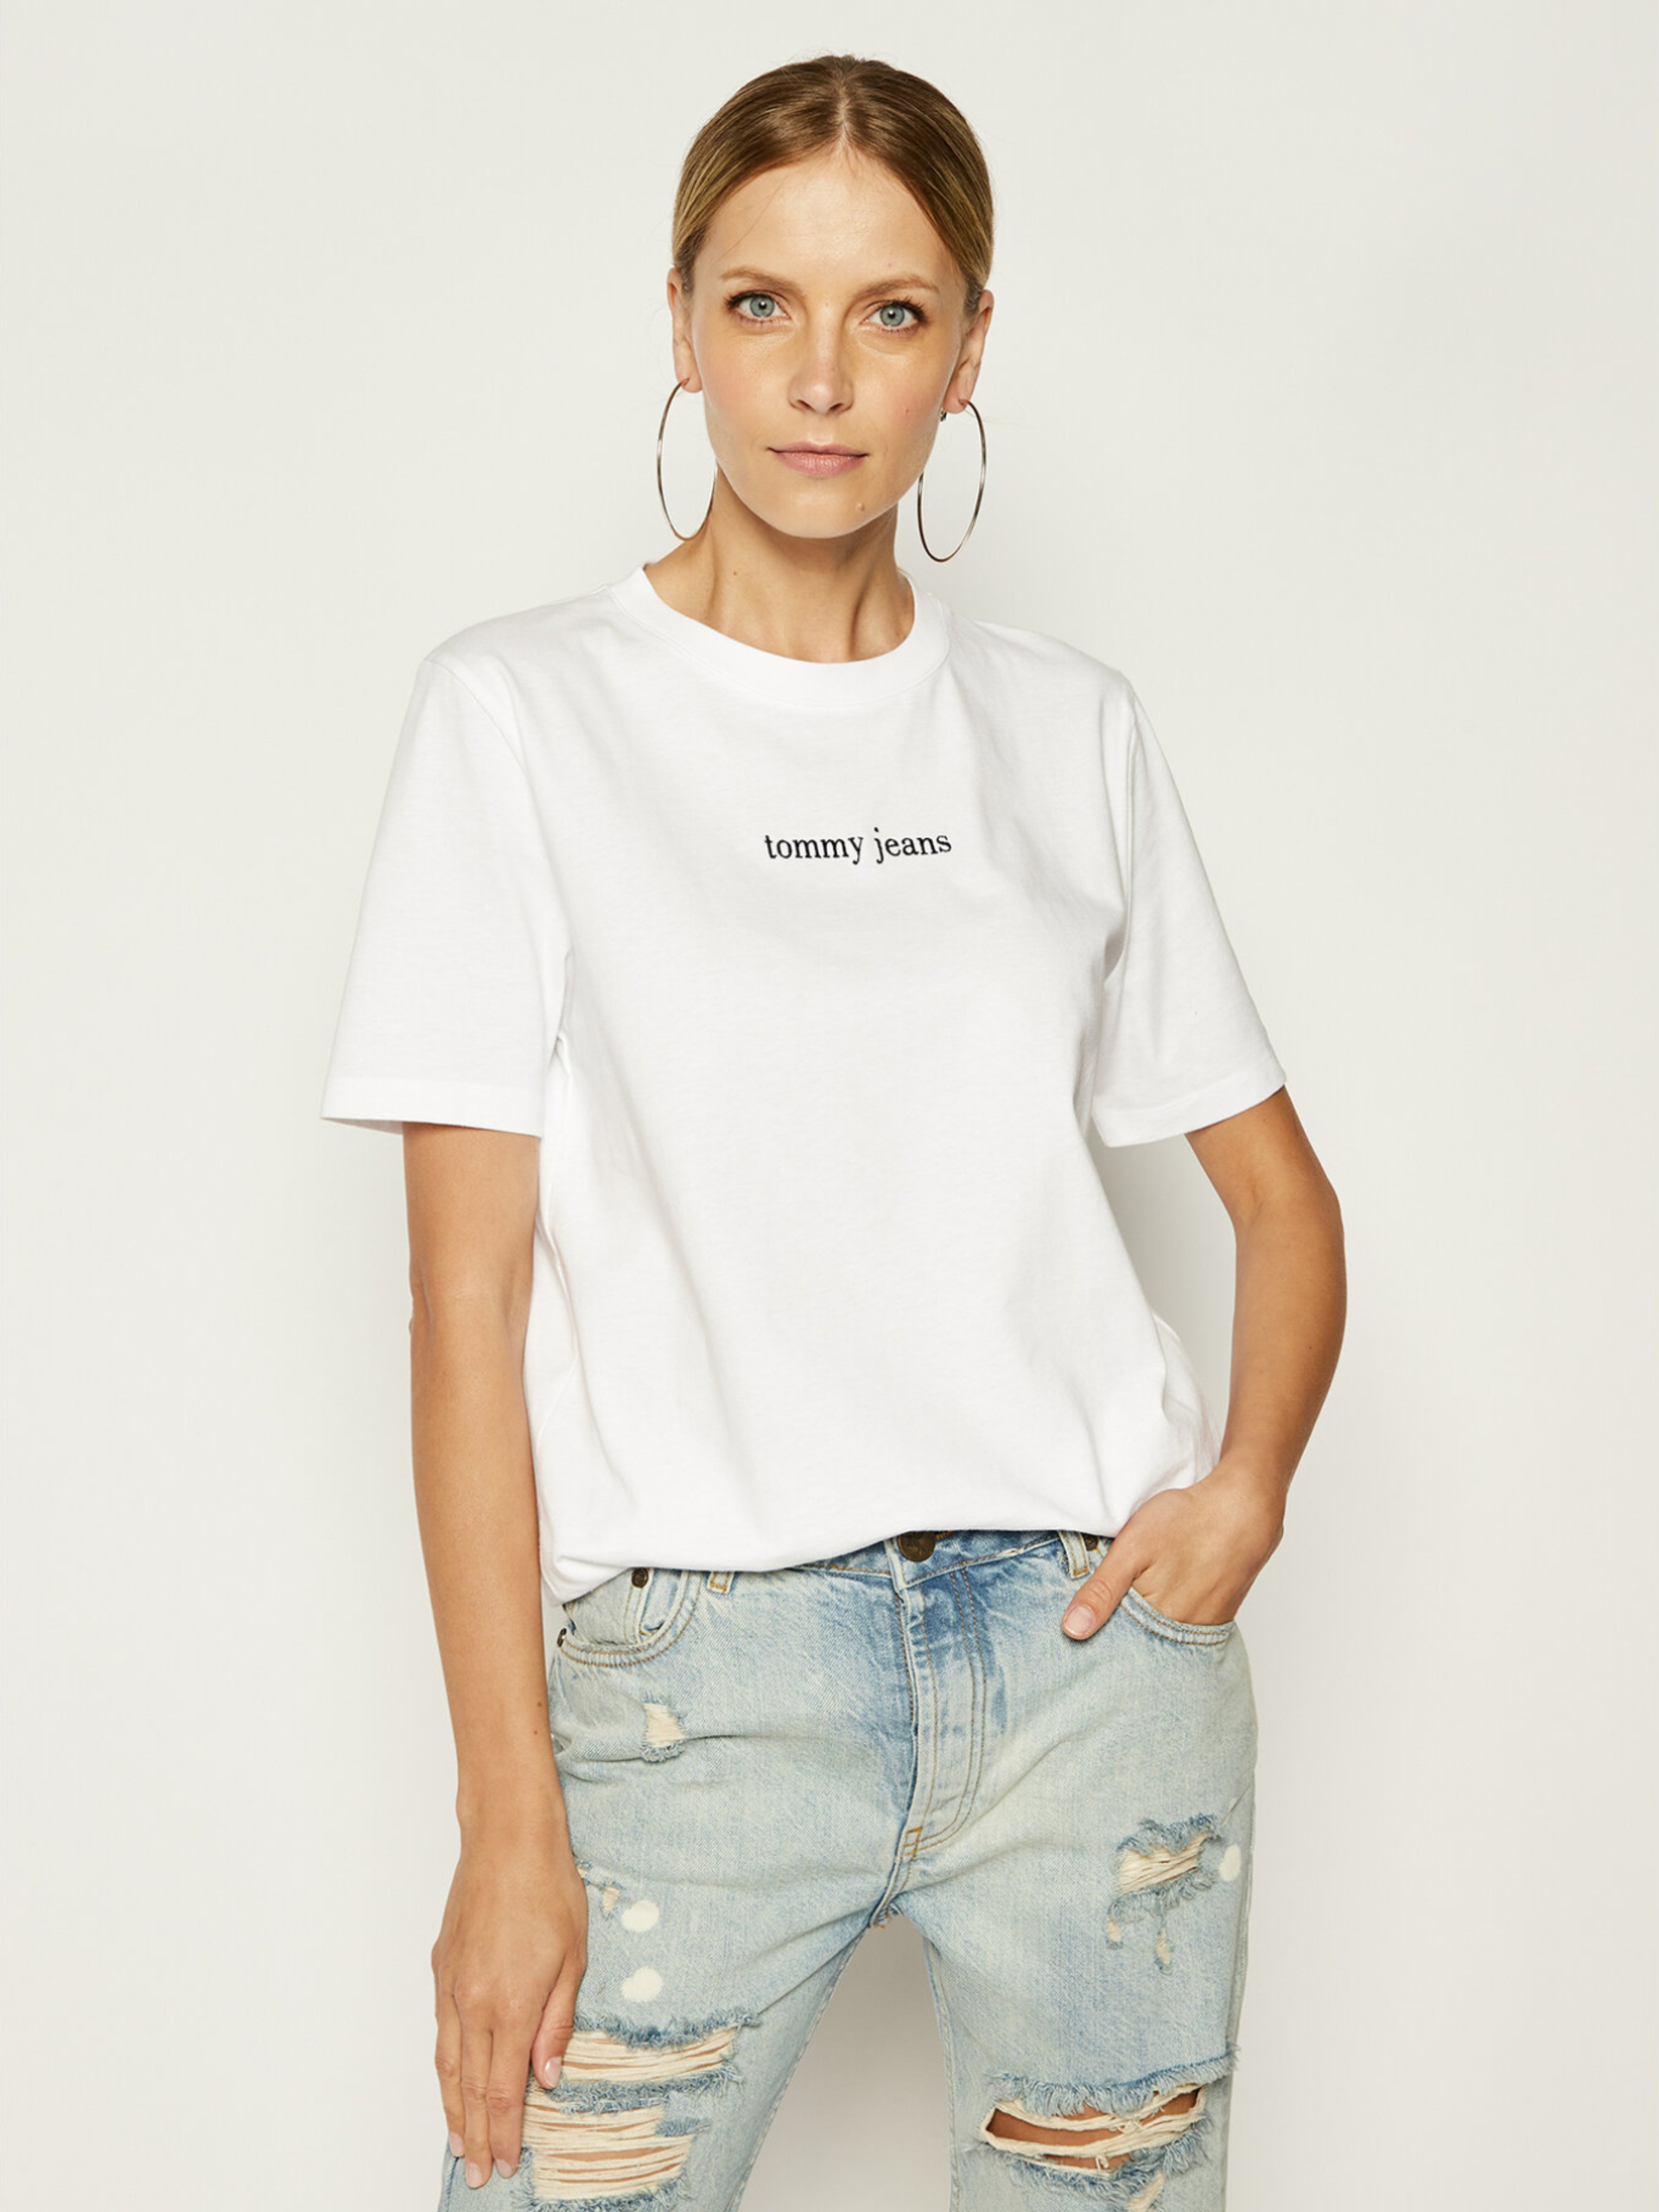 Tommy Jeans dámské bílé tričko - M (100)